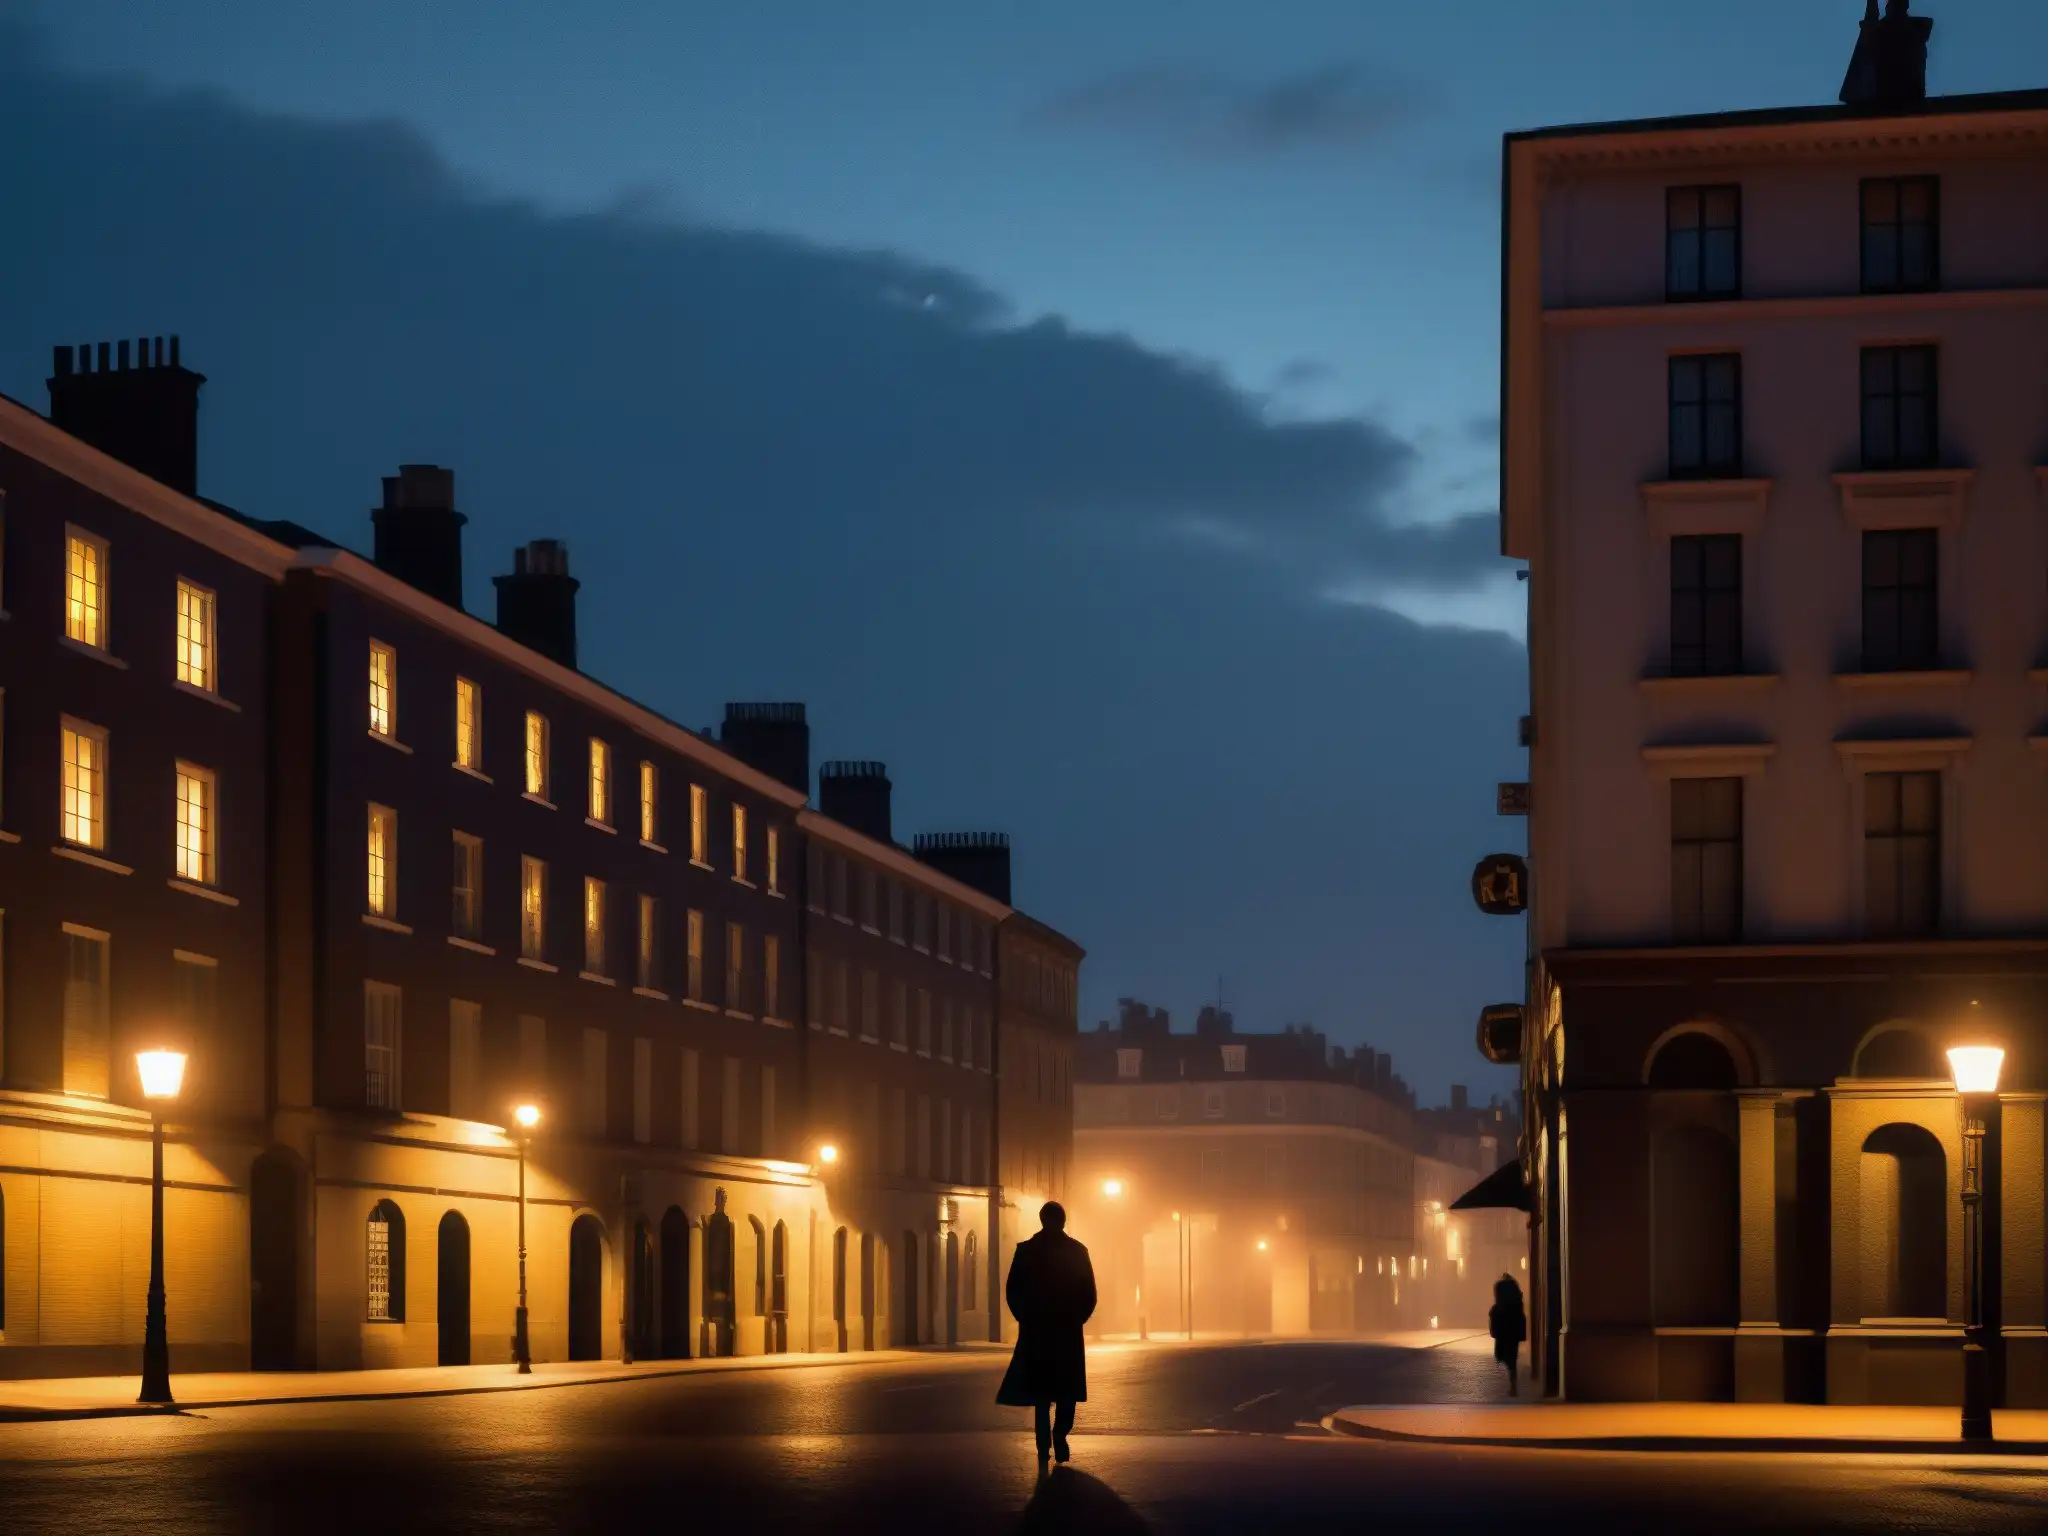 Un rincón de ciudad en penumbra, con una figura solitaria bajo la luz titilante de una farola